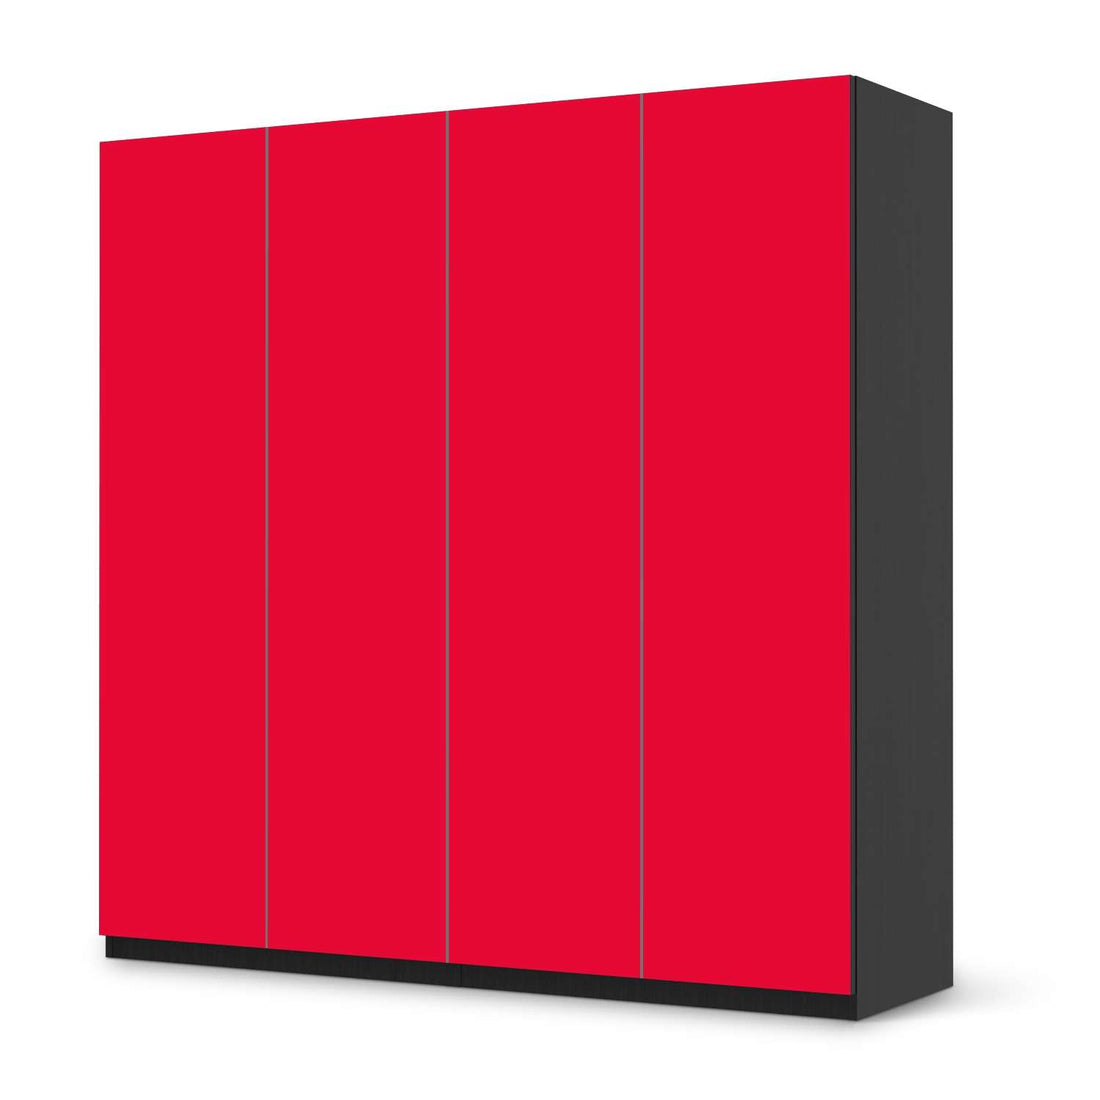 Klebefolie für Schränke Rot Light - IKEA Pax Schrank 201 cm Höhe - 4 Türen - schwarz